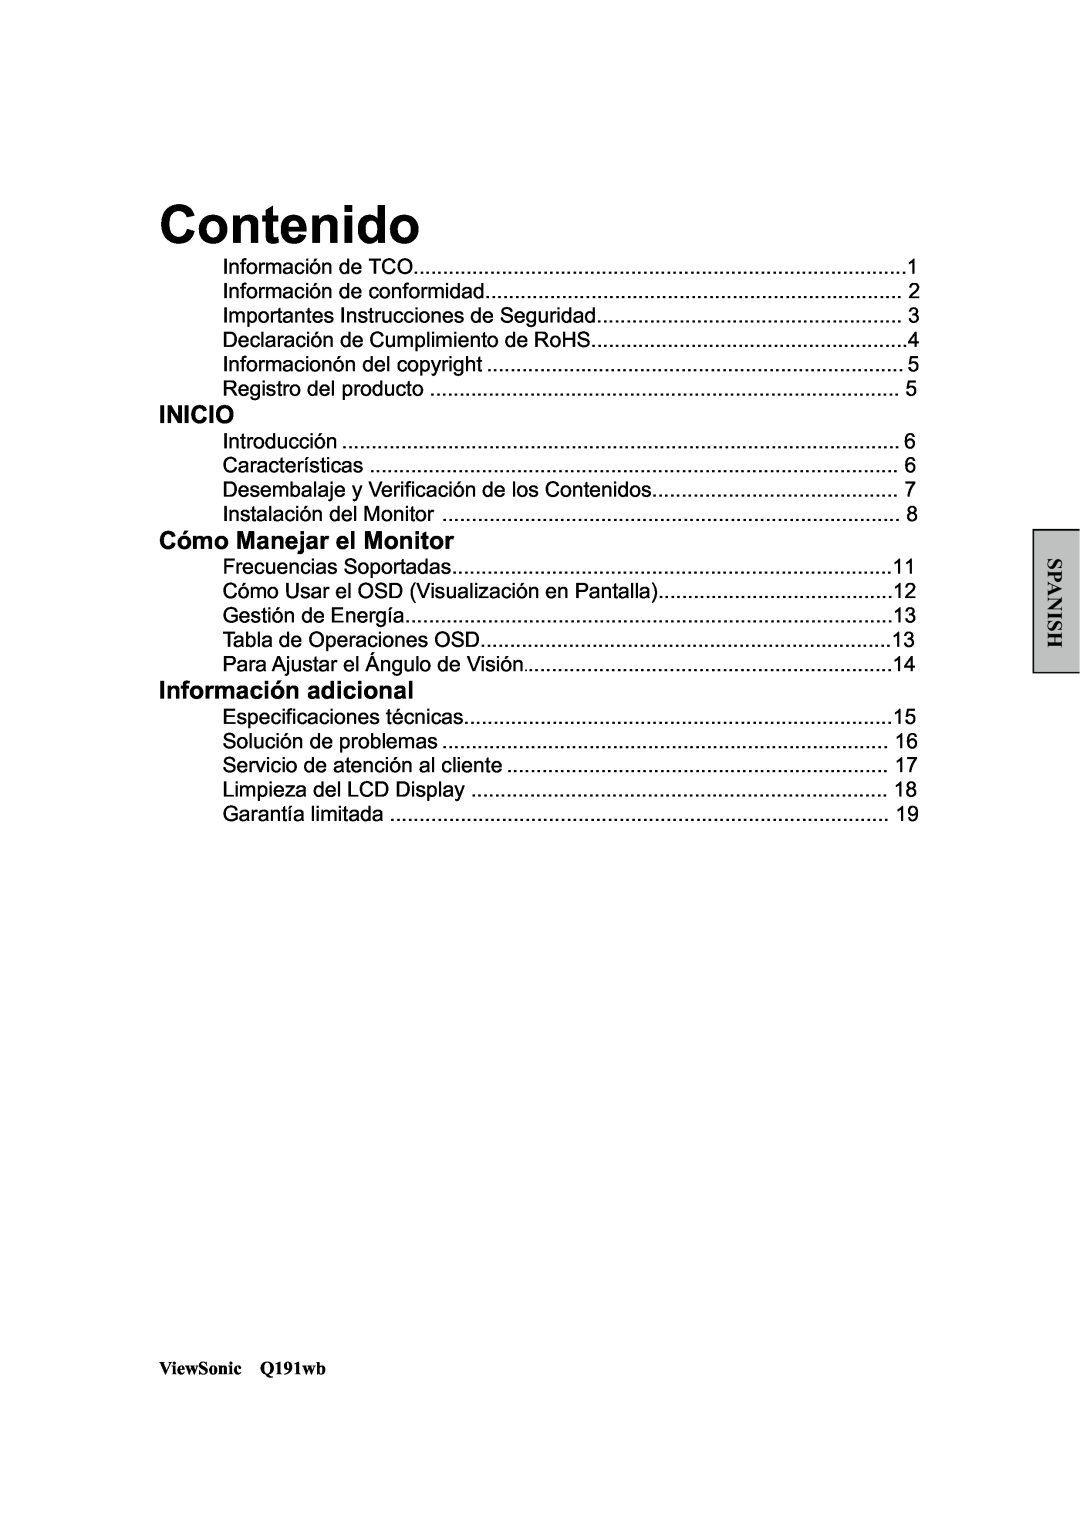 ViewSonic Q191WB manual Contenido, Inicio, Cómo Manejar el Monitor, Información adicional, Spanish 